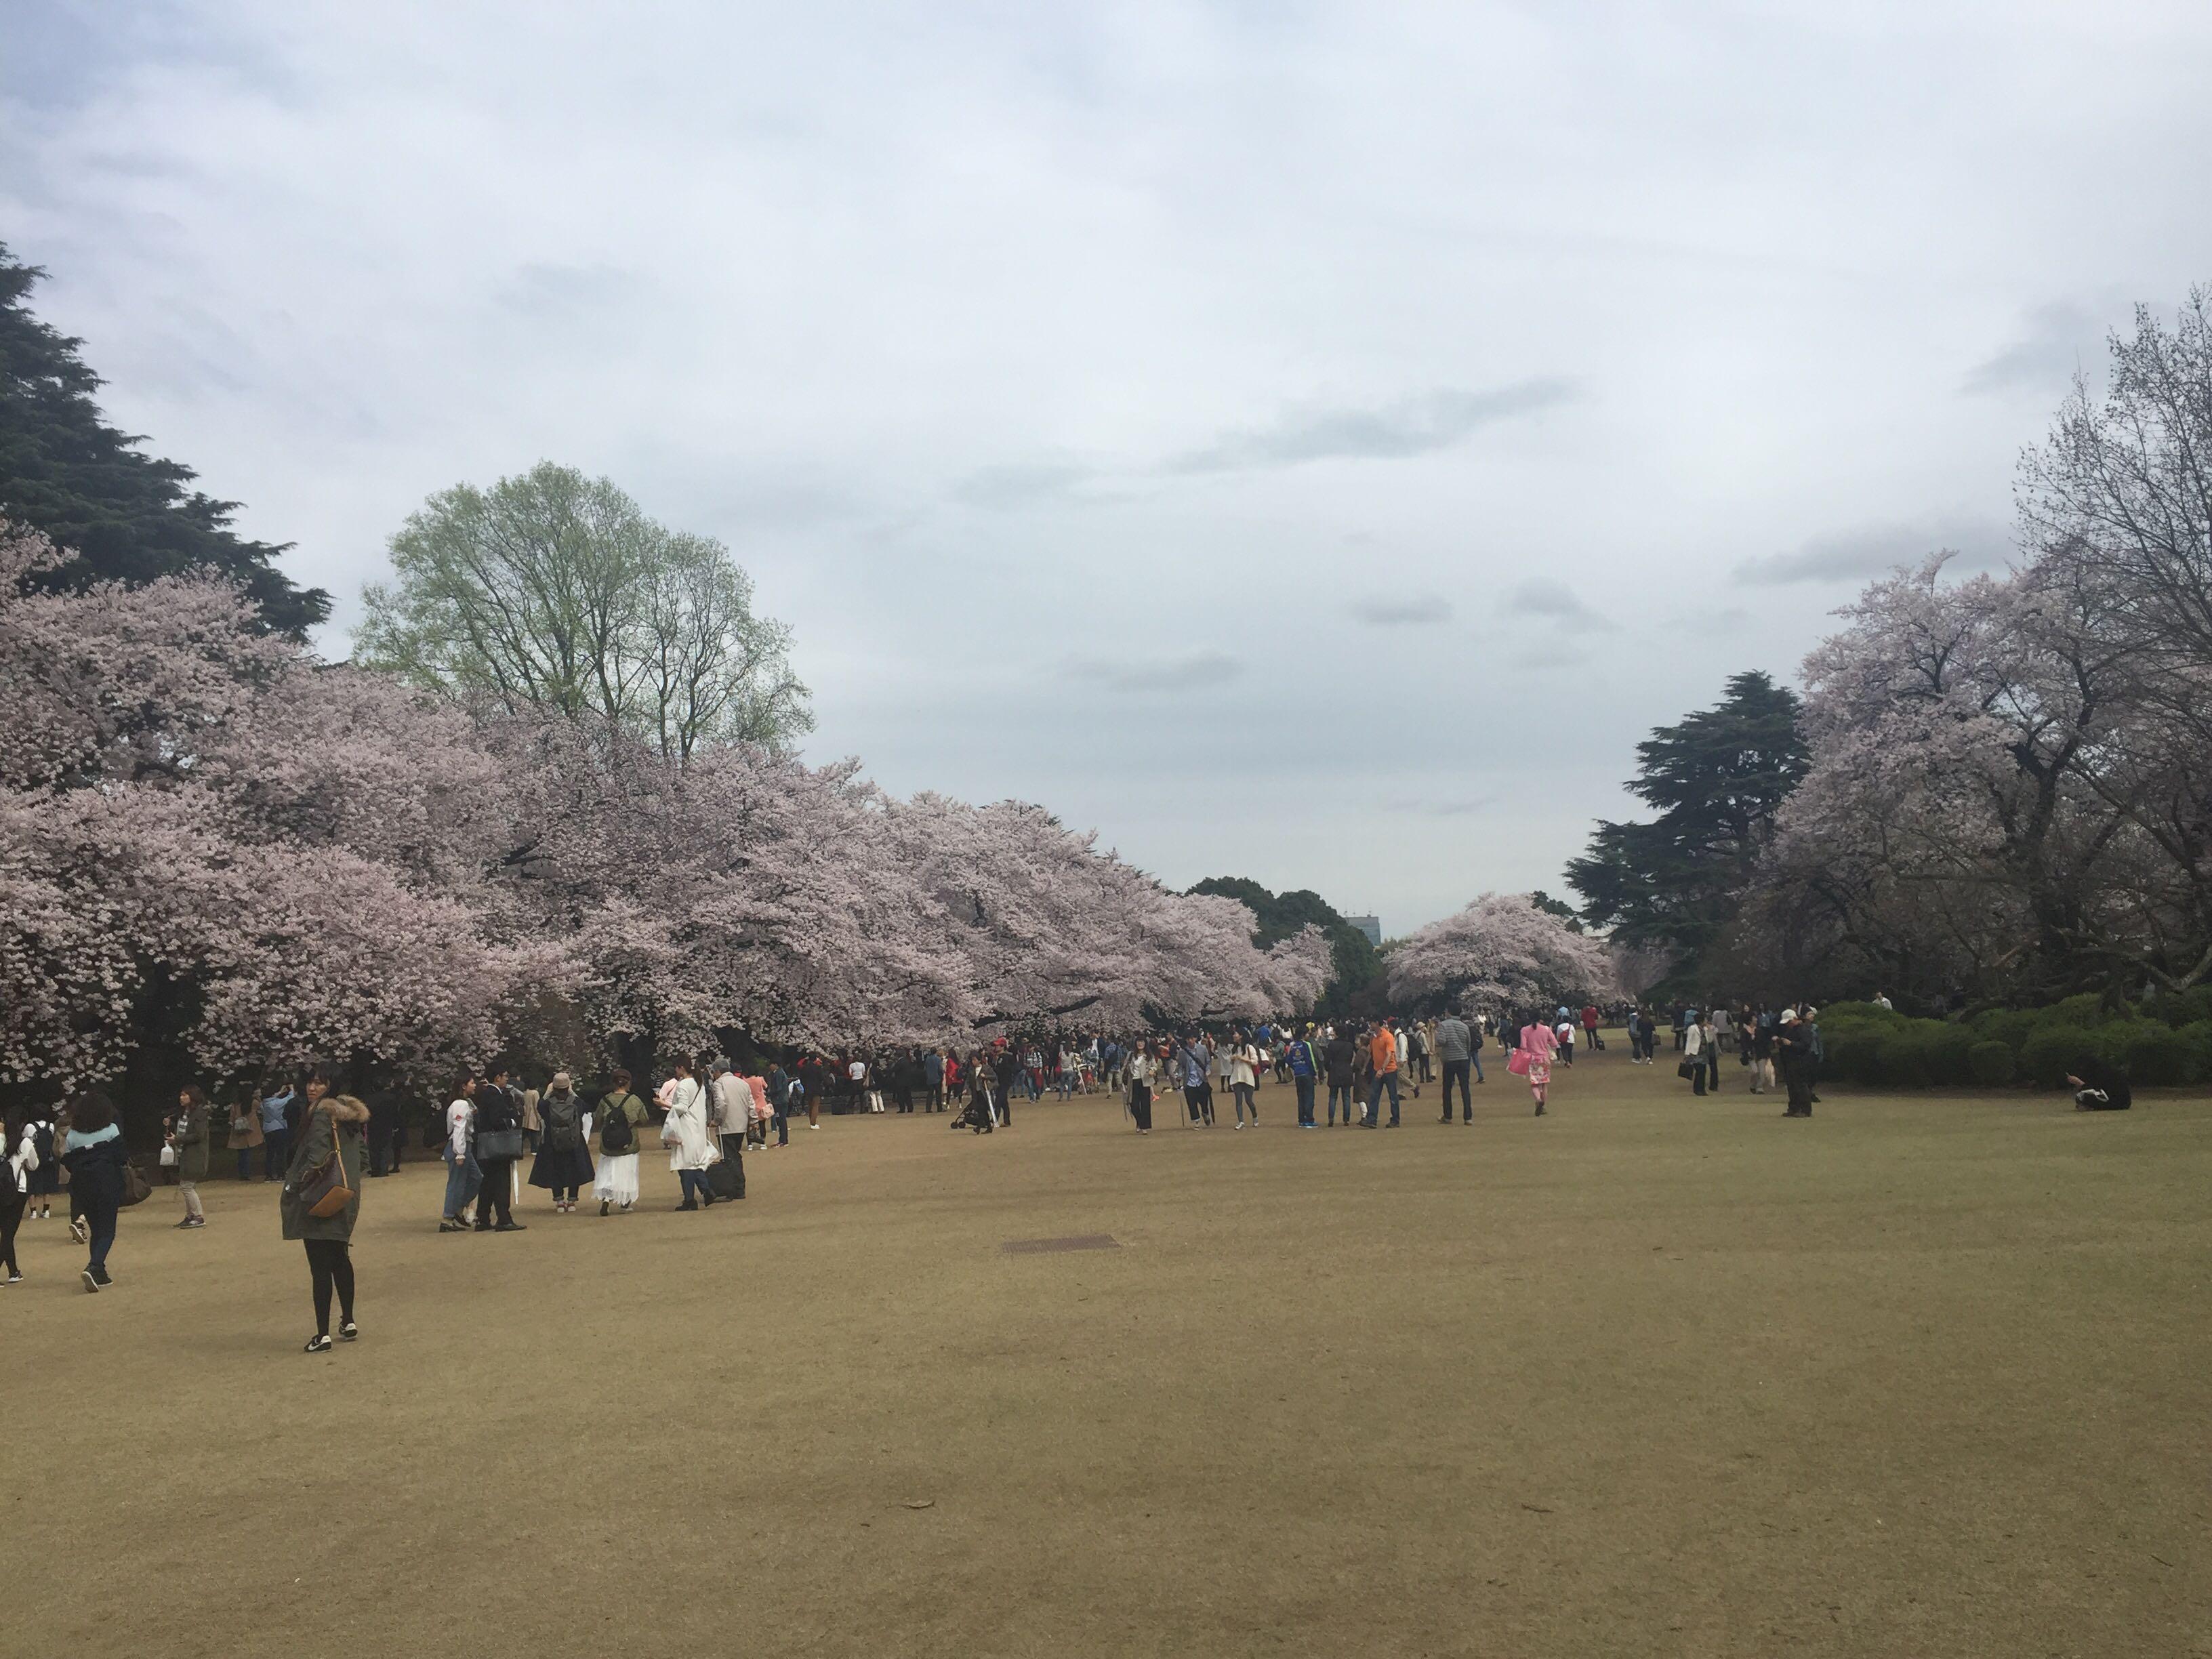 四月十八去日本,哪里还能看到樱花? - 陈蕊的回